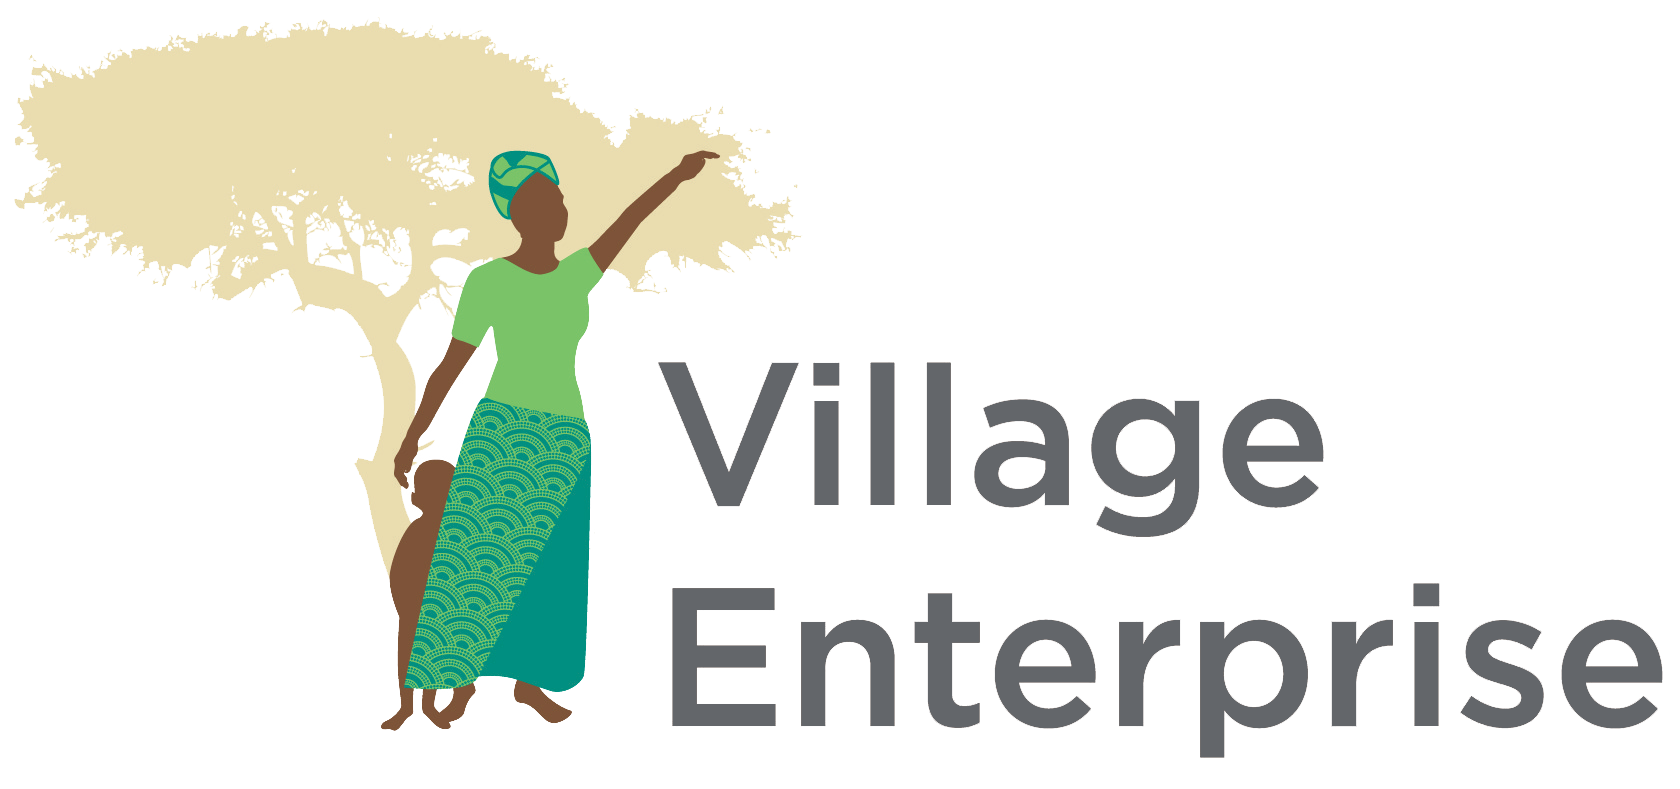 Village Enterprise Announced as Million Lives Club Vanguard Member